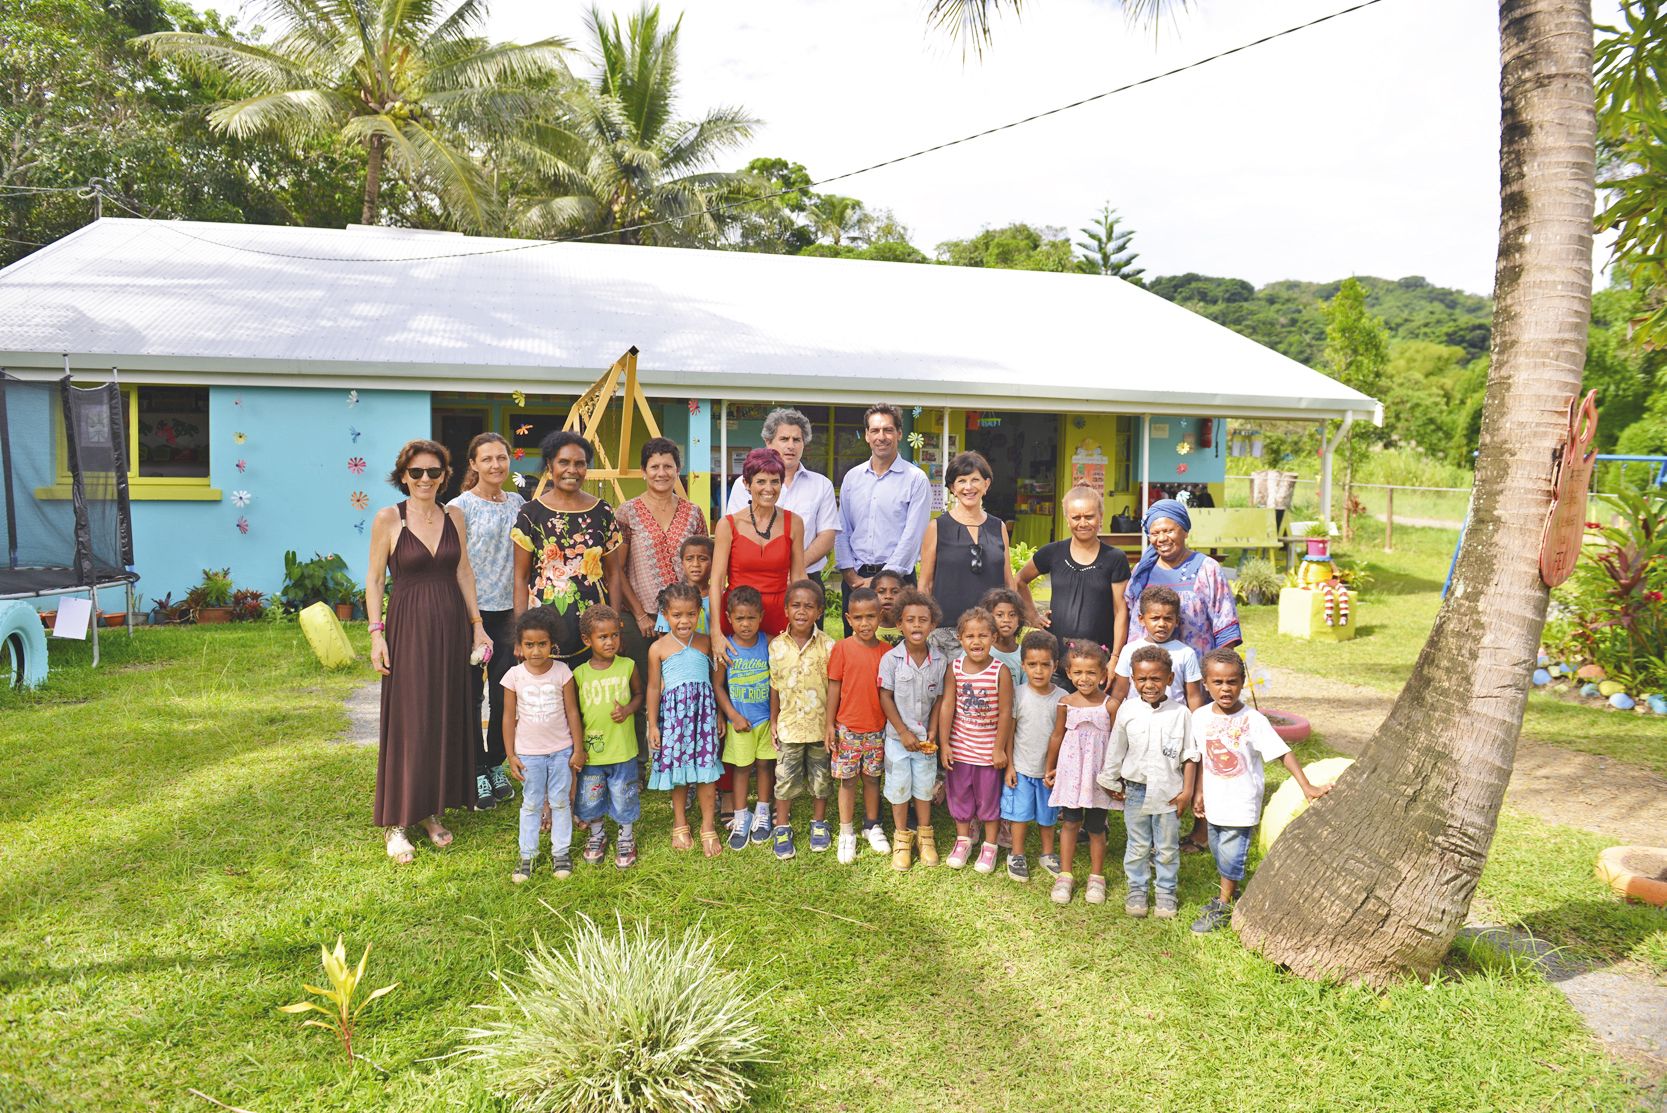 A l’école de proximité de la tribu de Pothé, la délégation a également été accueillie avec joie par les petits enfants.